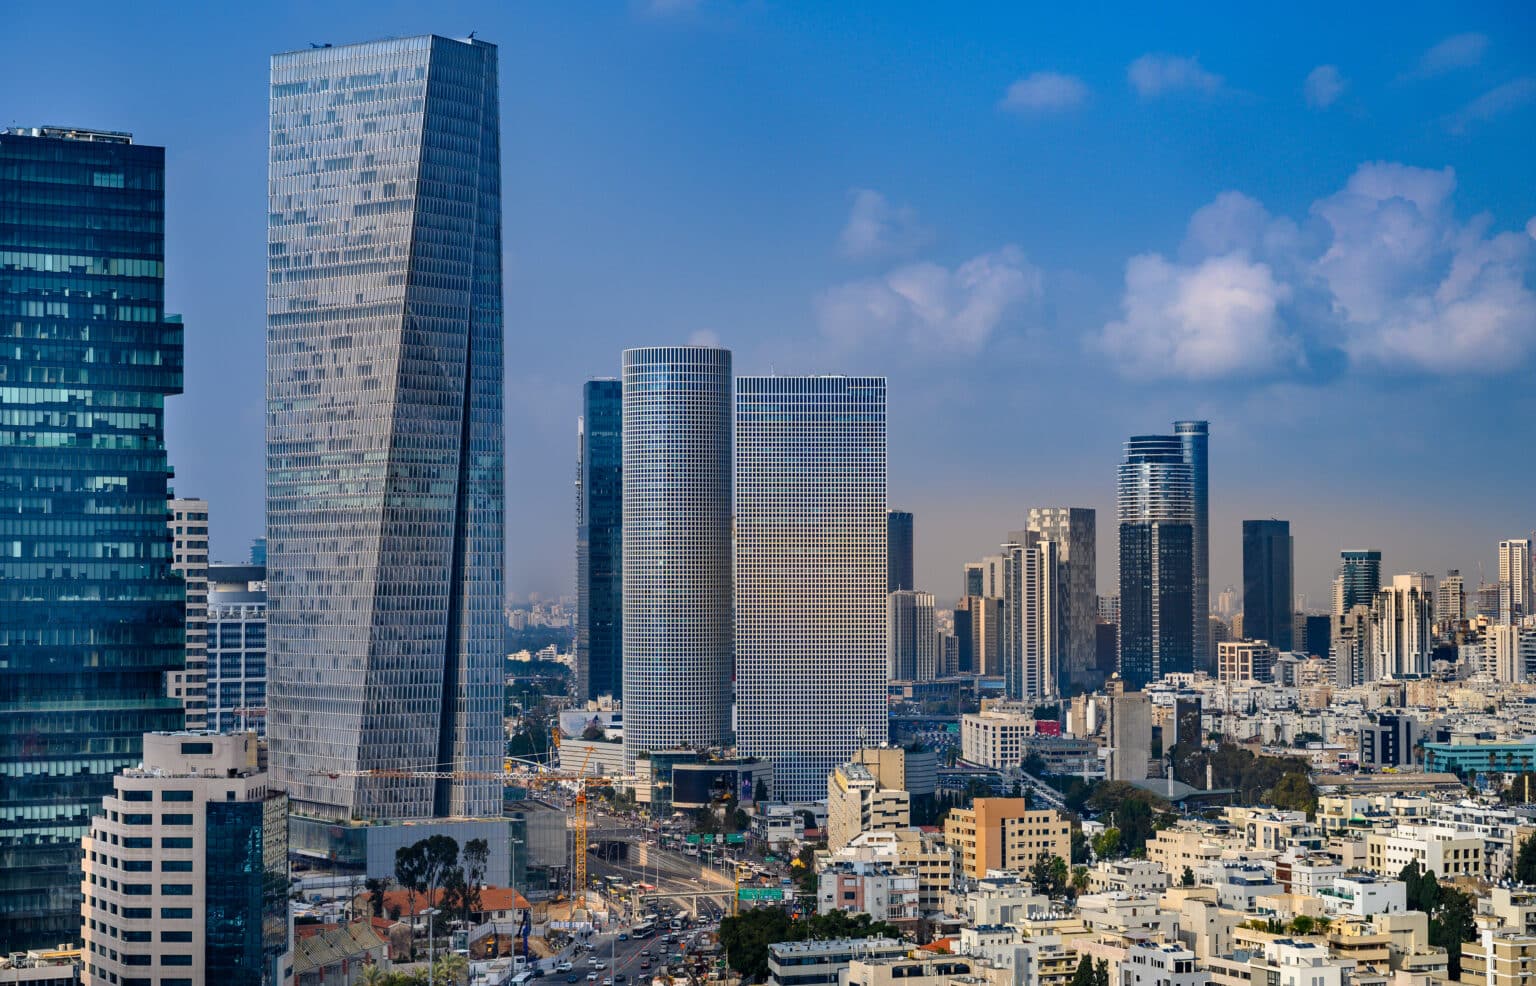 ערי הצפון והדרום לא ברשימה: תל אביב מובילה בבנייה של התחדשות עירונית